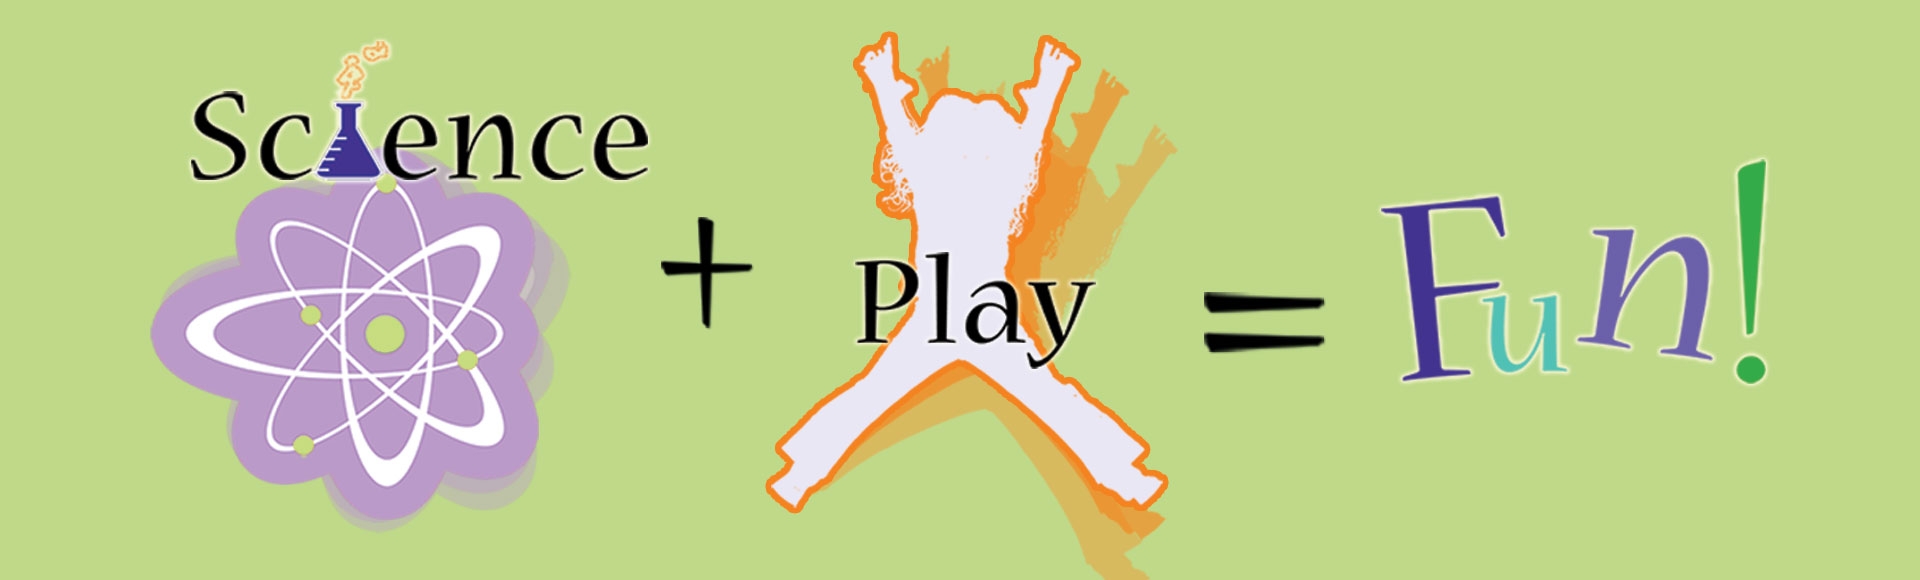 Science + Play = Fun